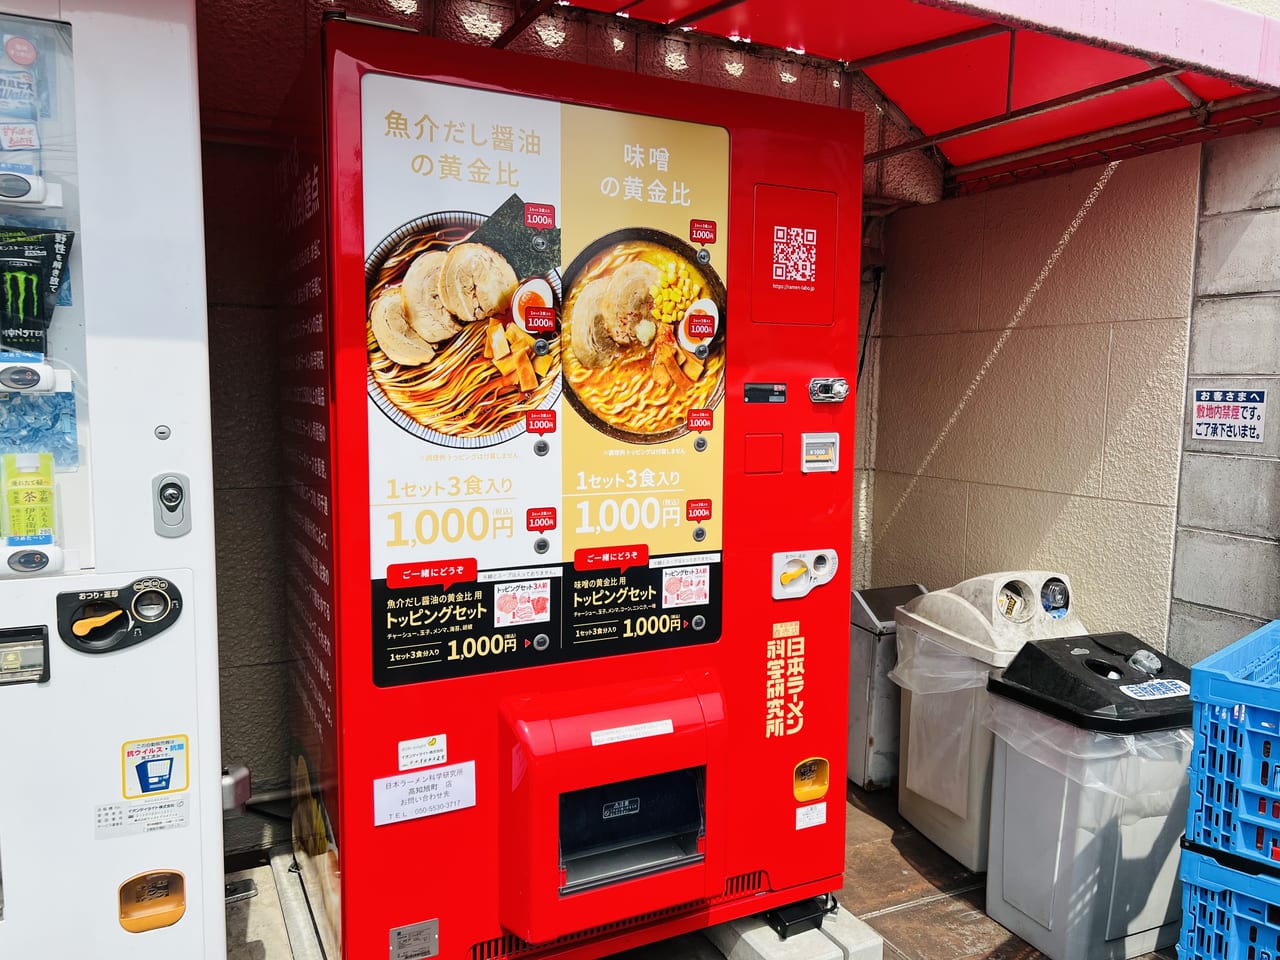 「日本ラーメン科学研究所 イオン高知旭町店」の自動販売機